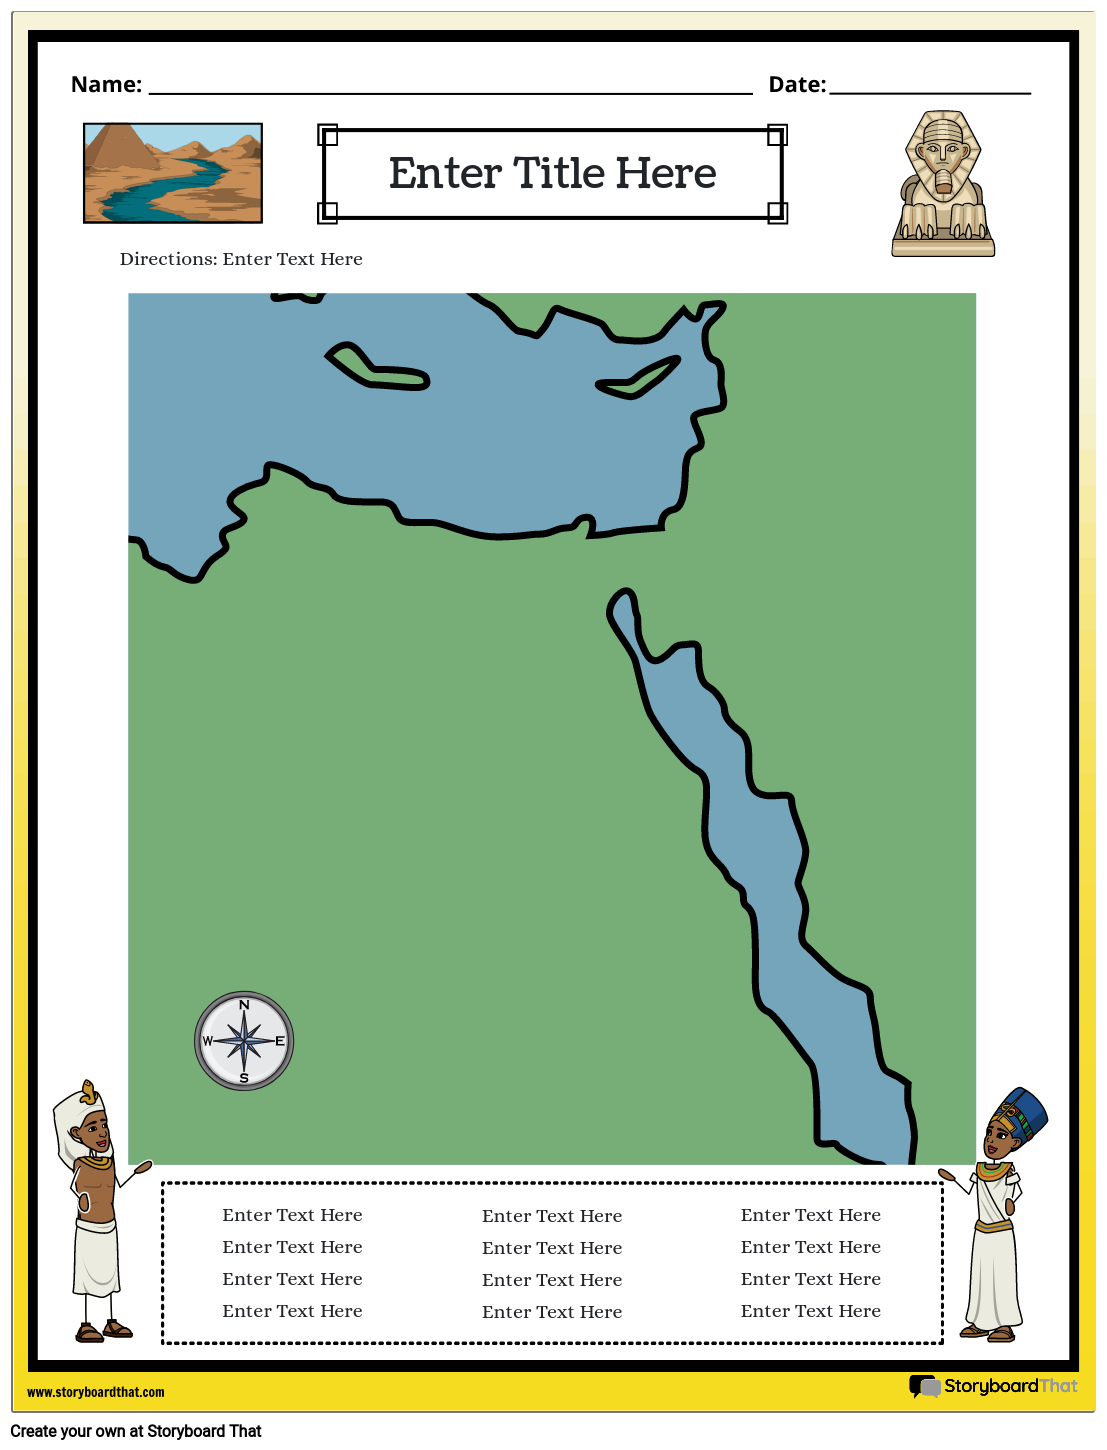 Mapa Starověkého Egypta